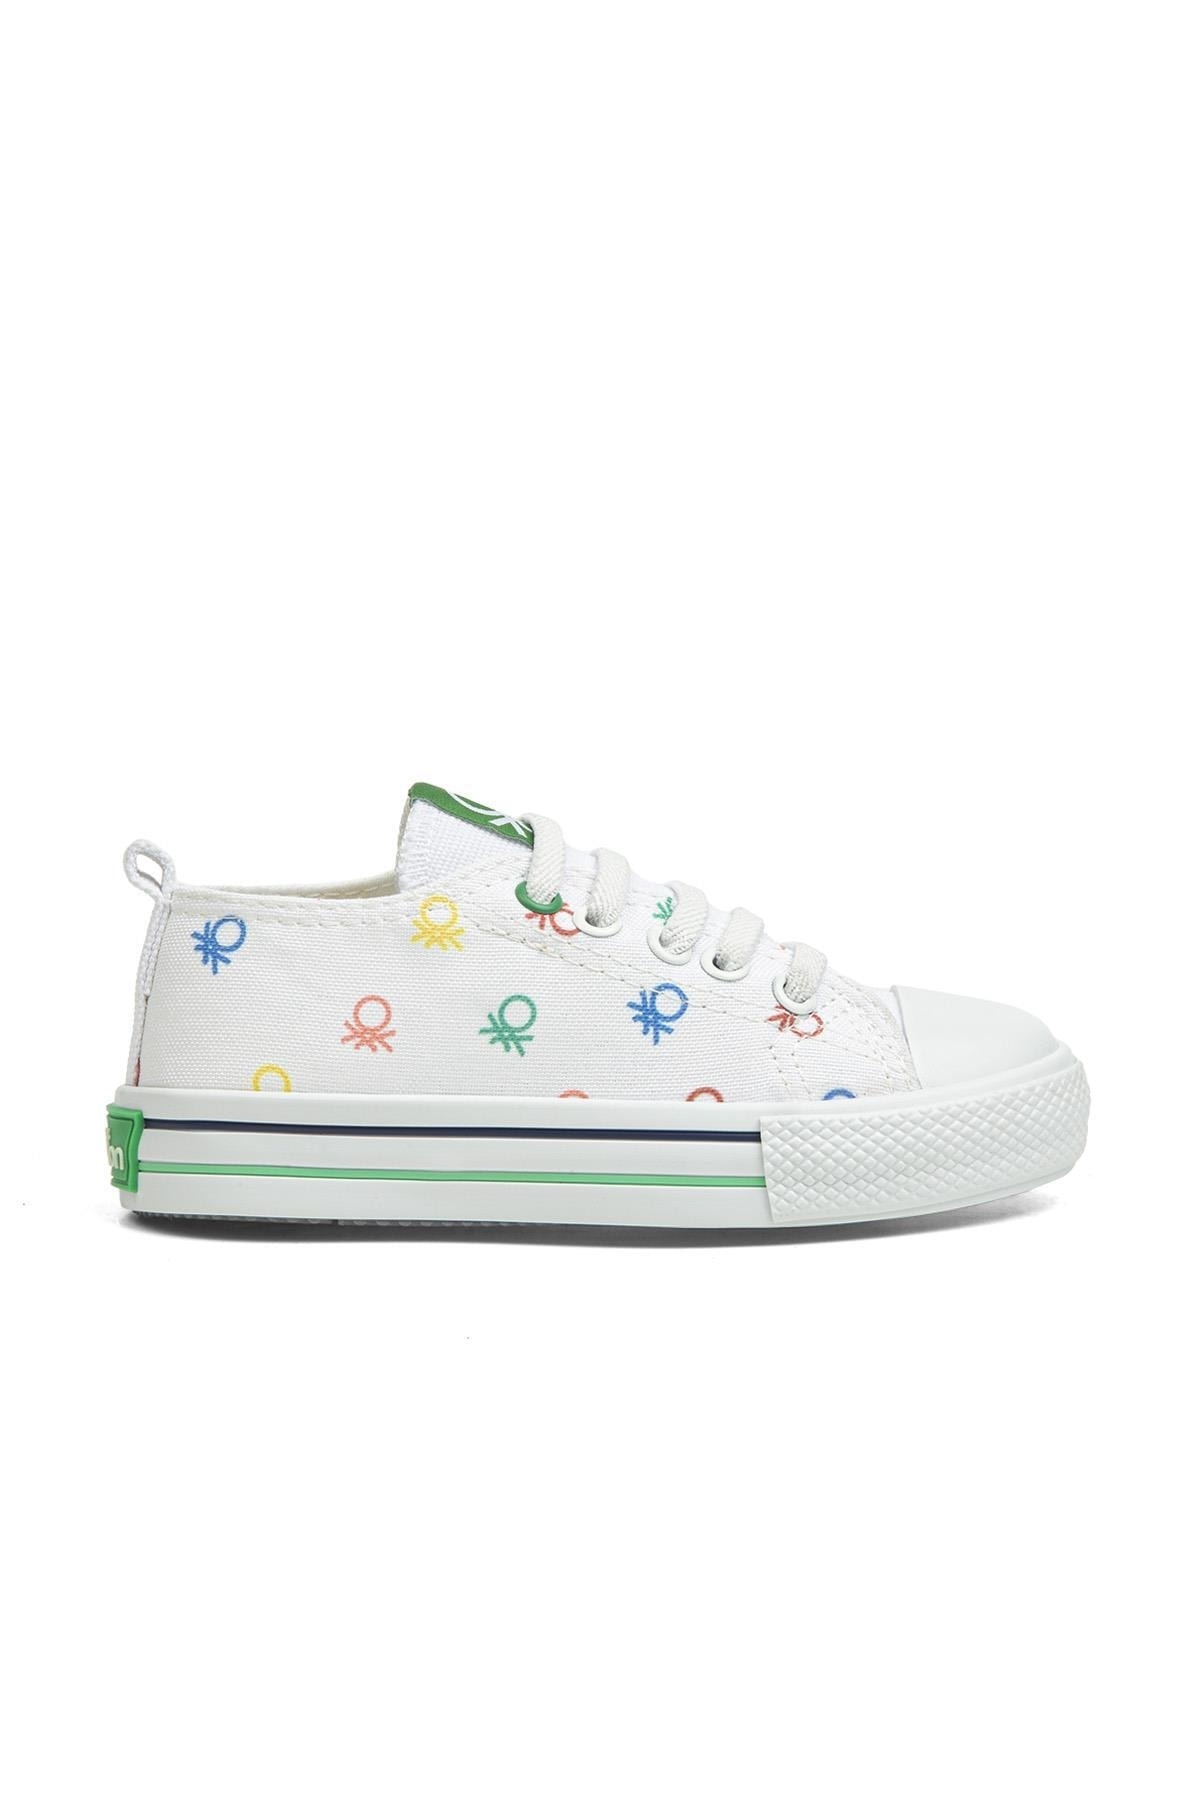 Benetton ® | Bn-30660 - 3394 Beyaz - Çocuk Spor Ayakkabı